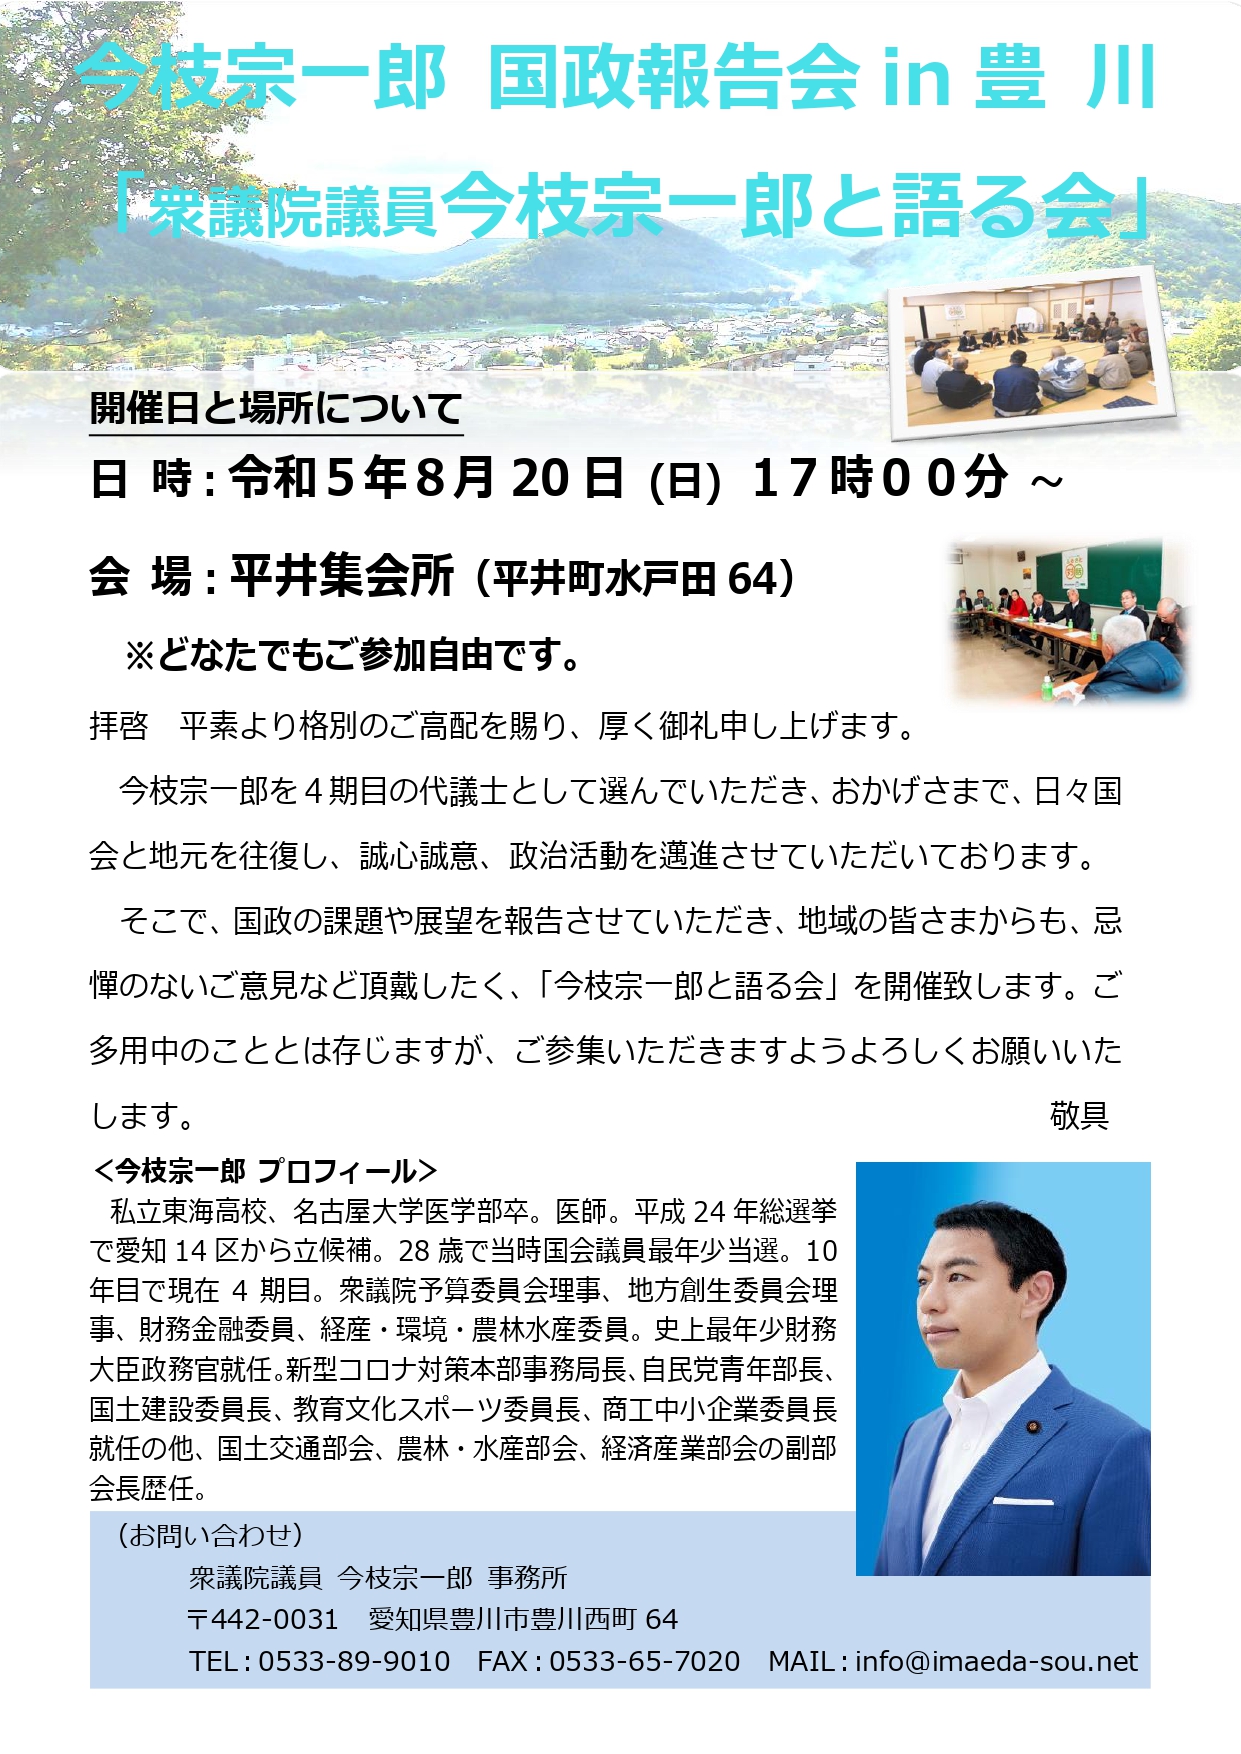 国政報告会 in 豊川の追加開催のお知らせ